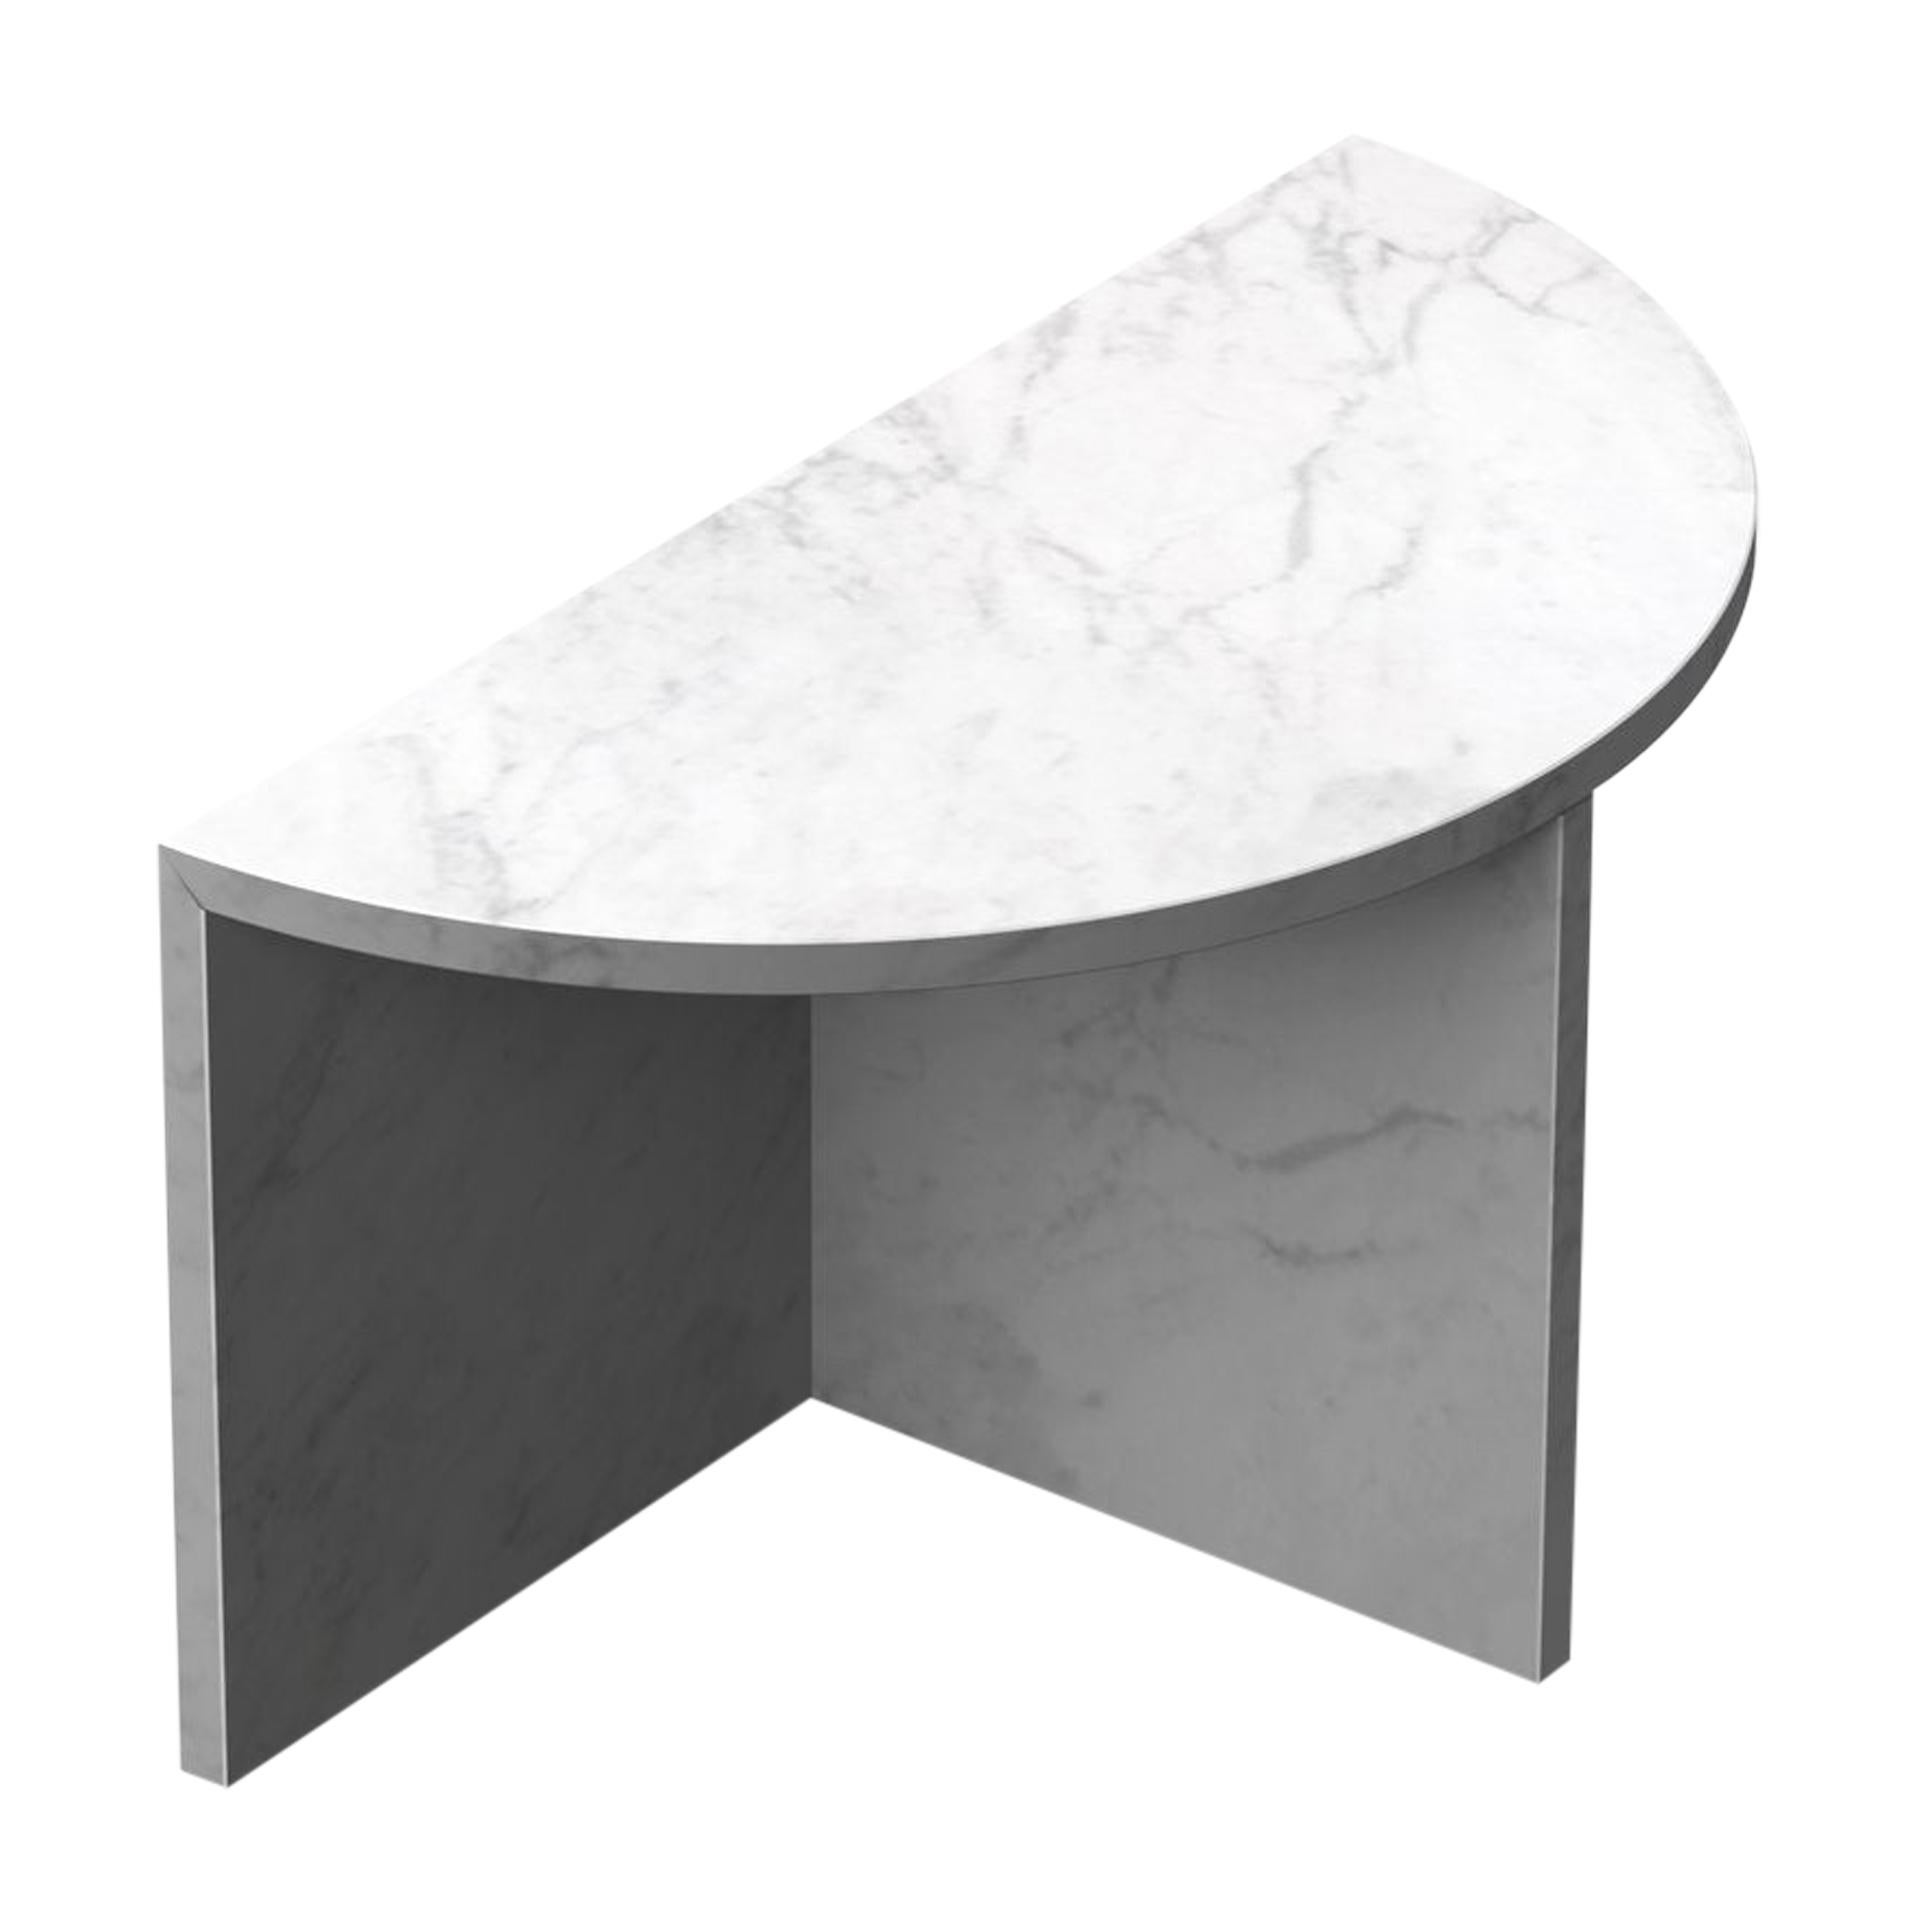 Carrara Marble "Fifty Circle" Coffee Table, Sebastian Scherer